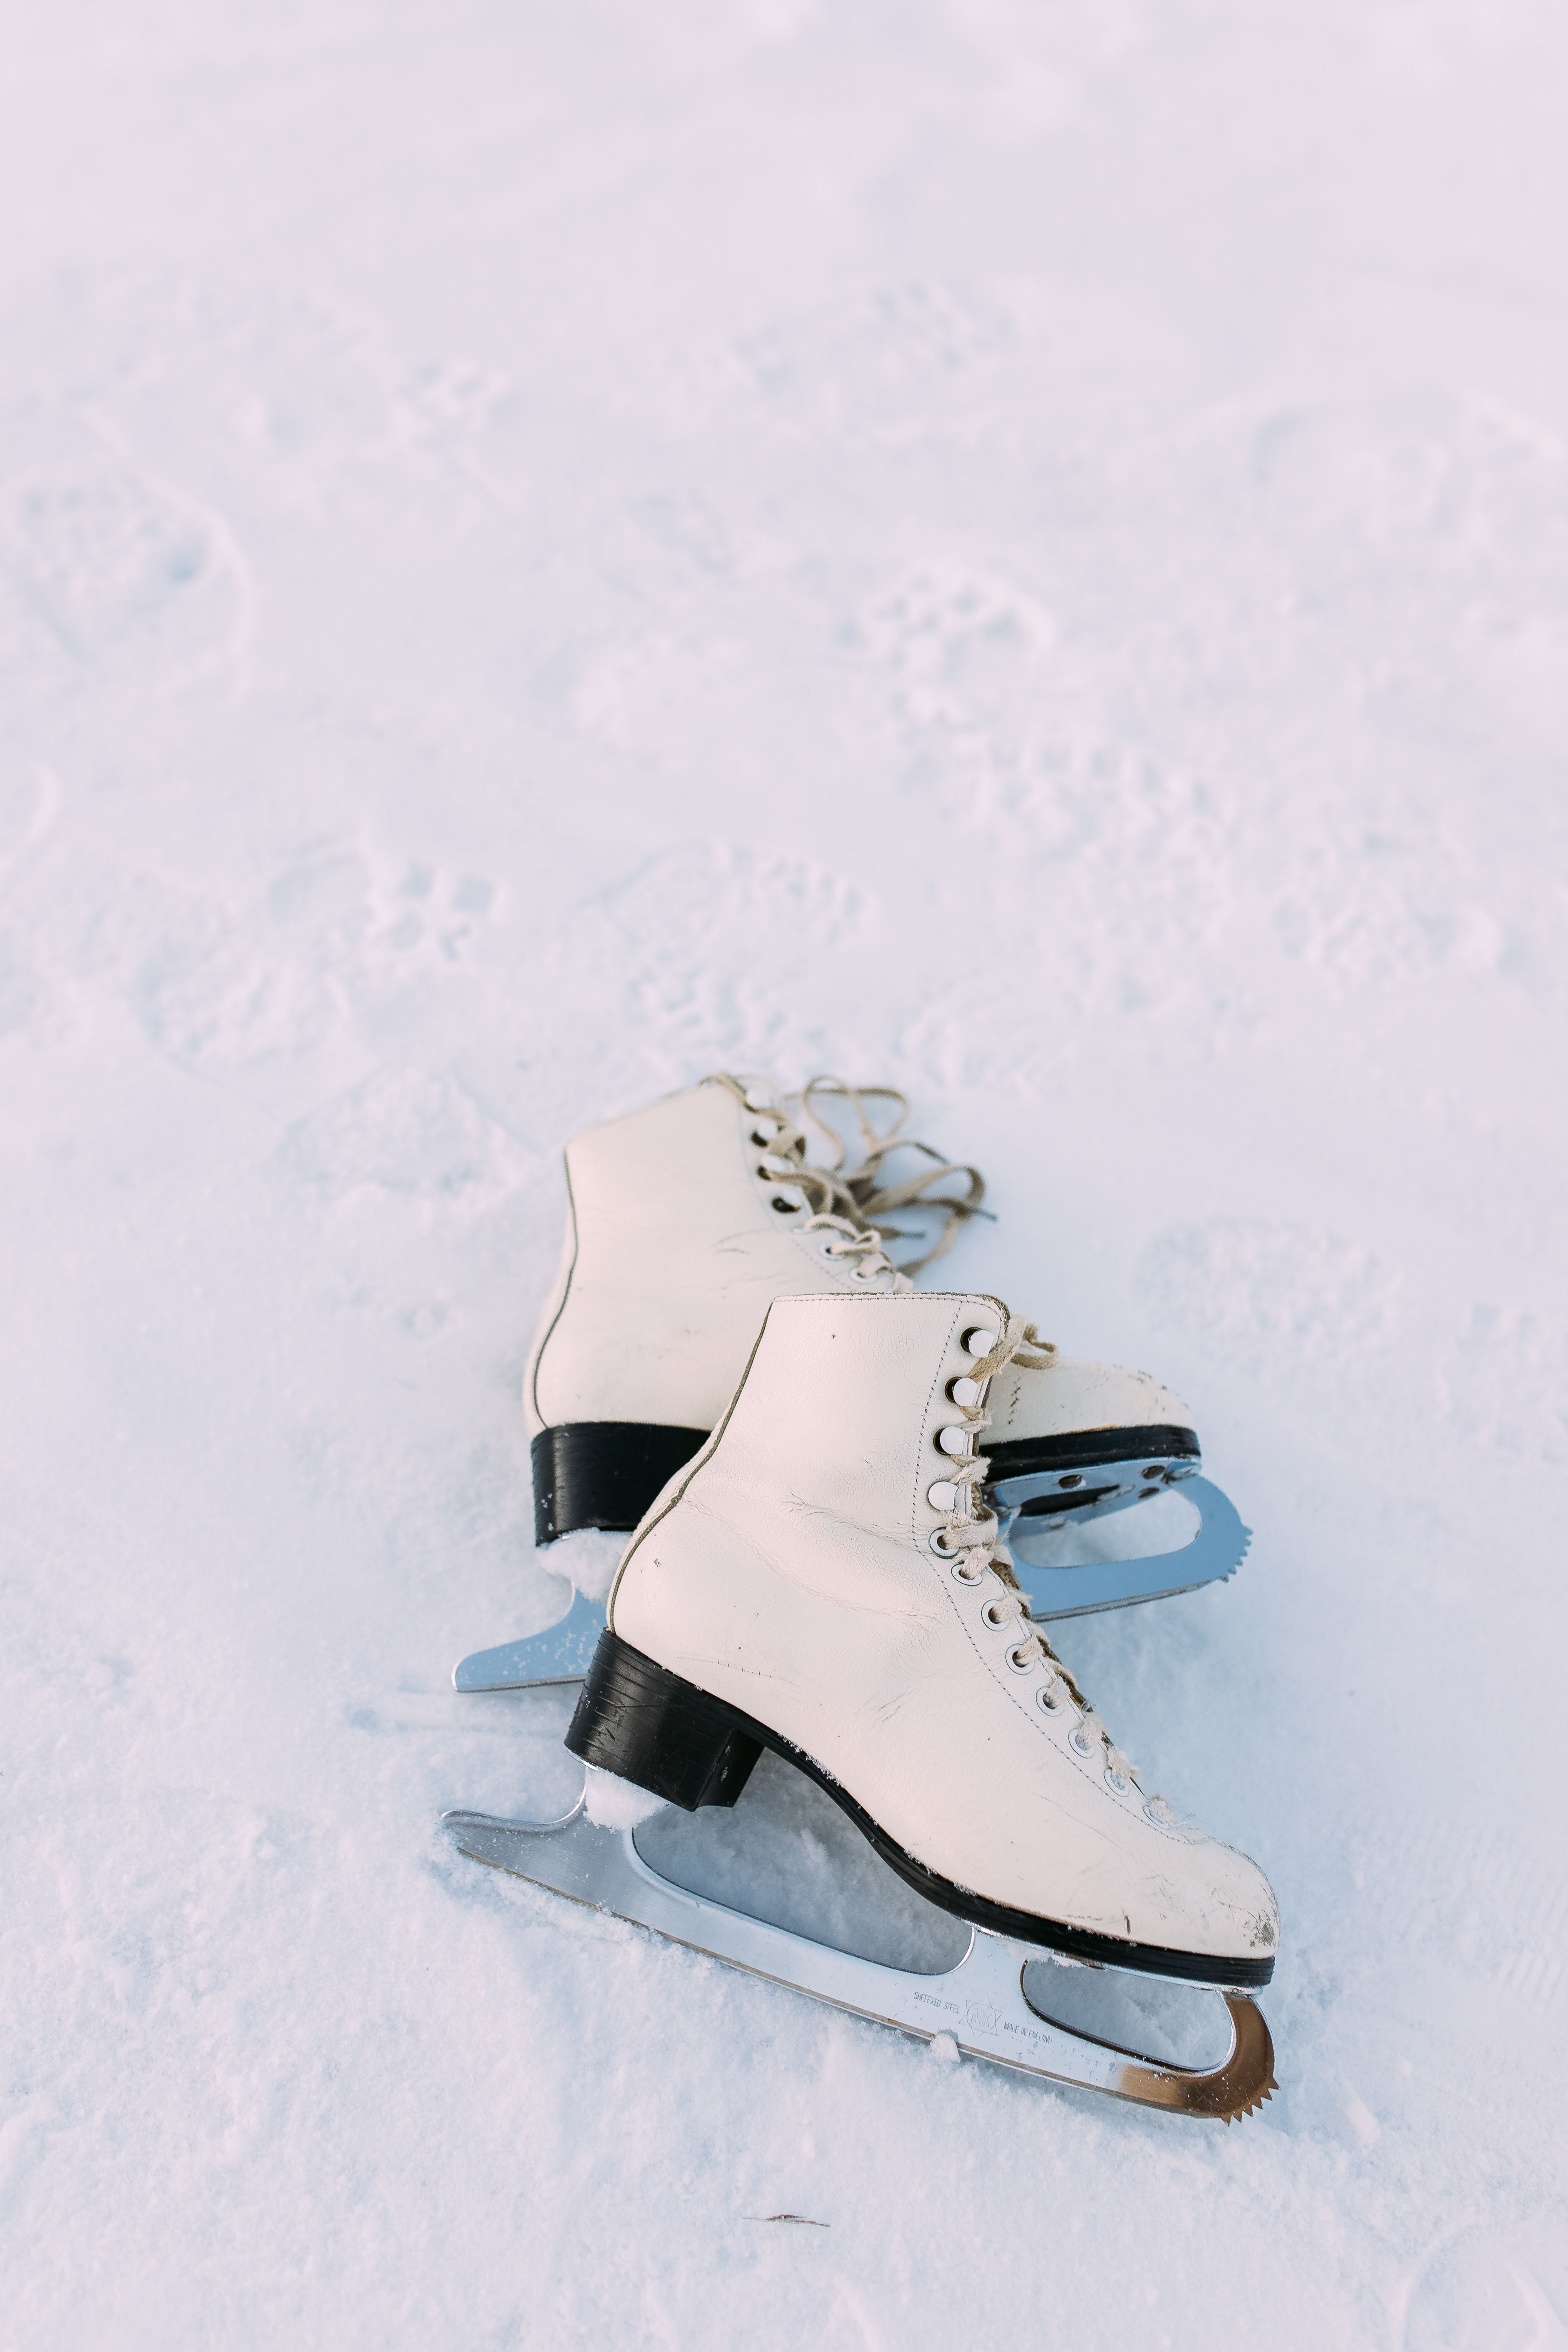 deze mooie schaatsen bevind jij je stijlvol op glad ijs!